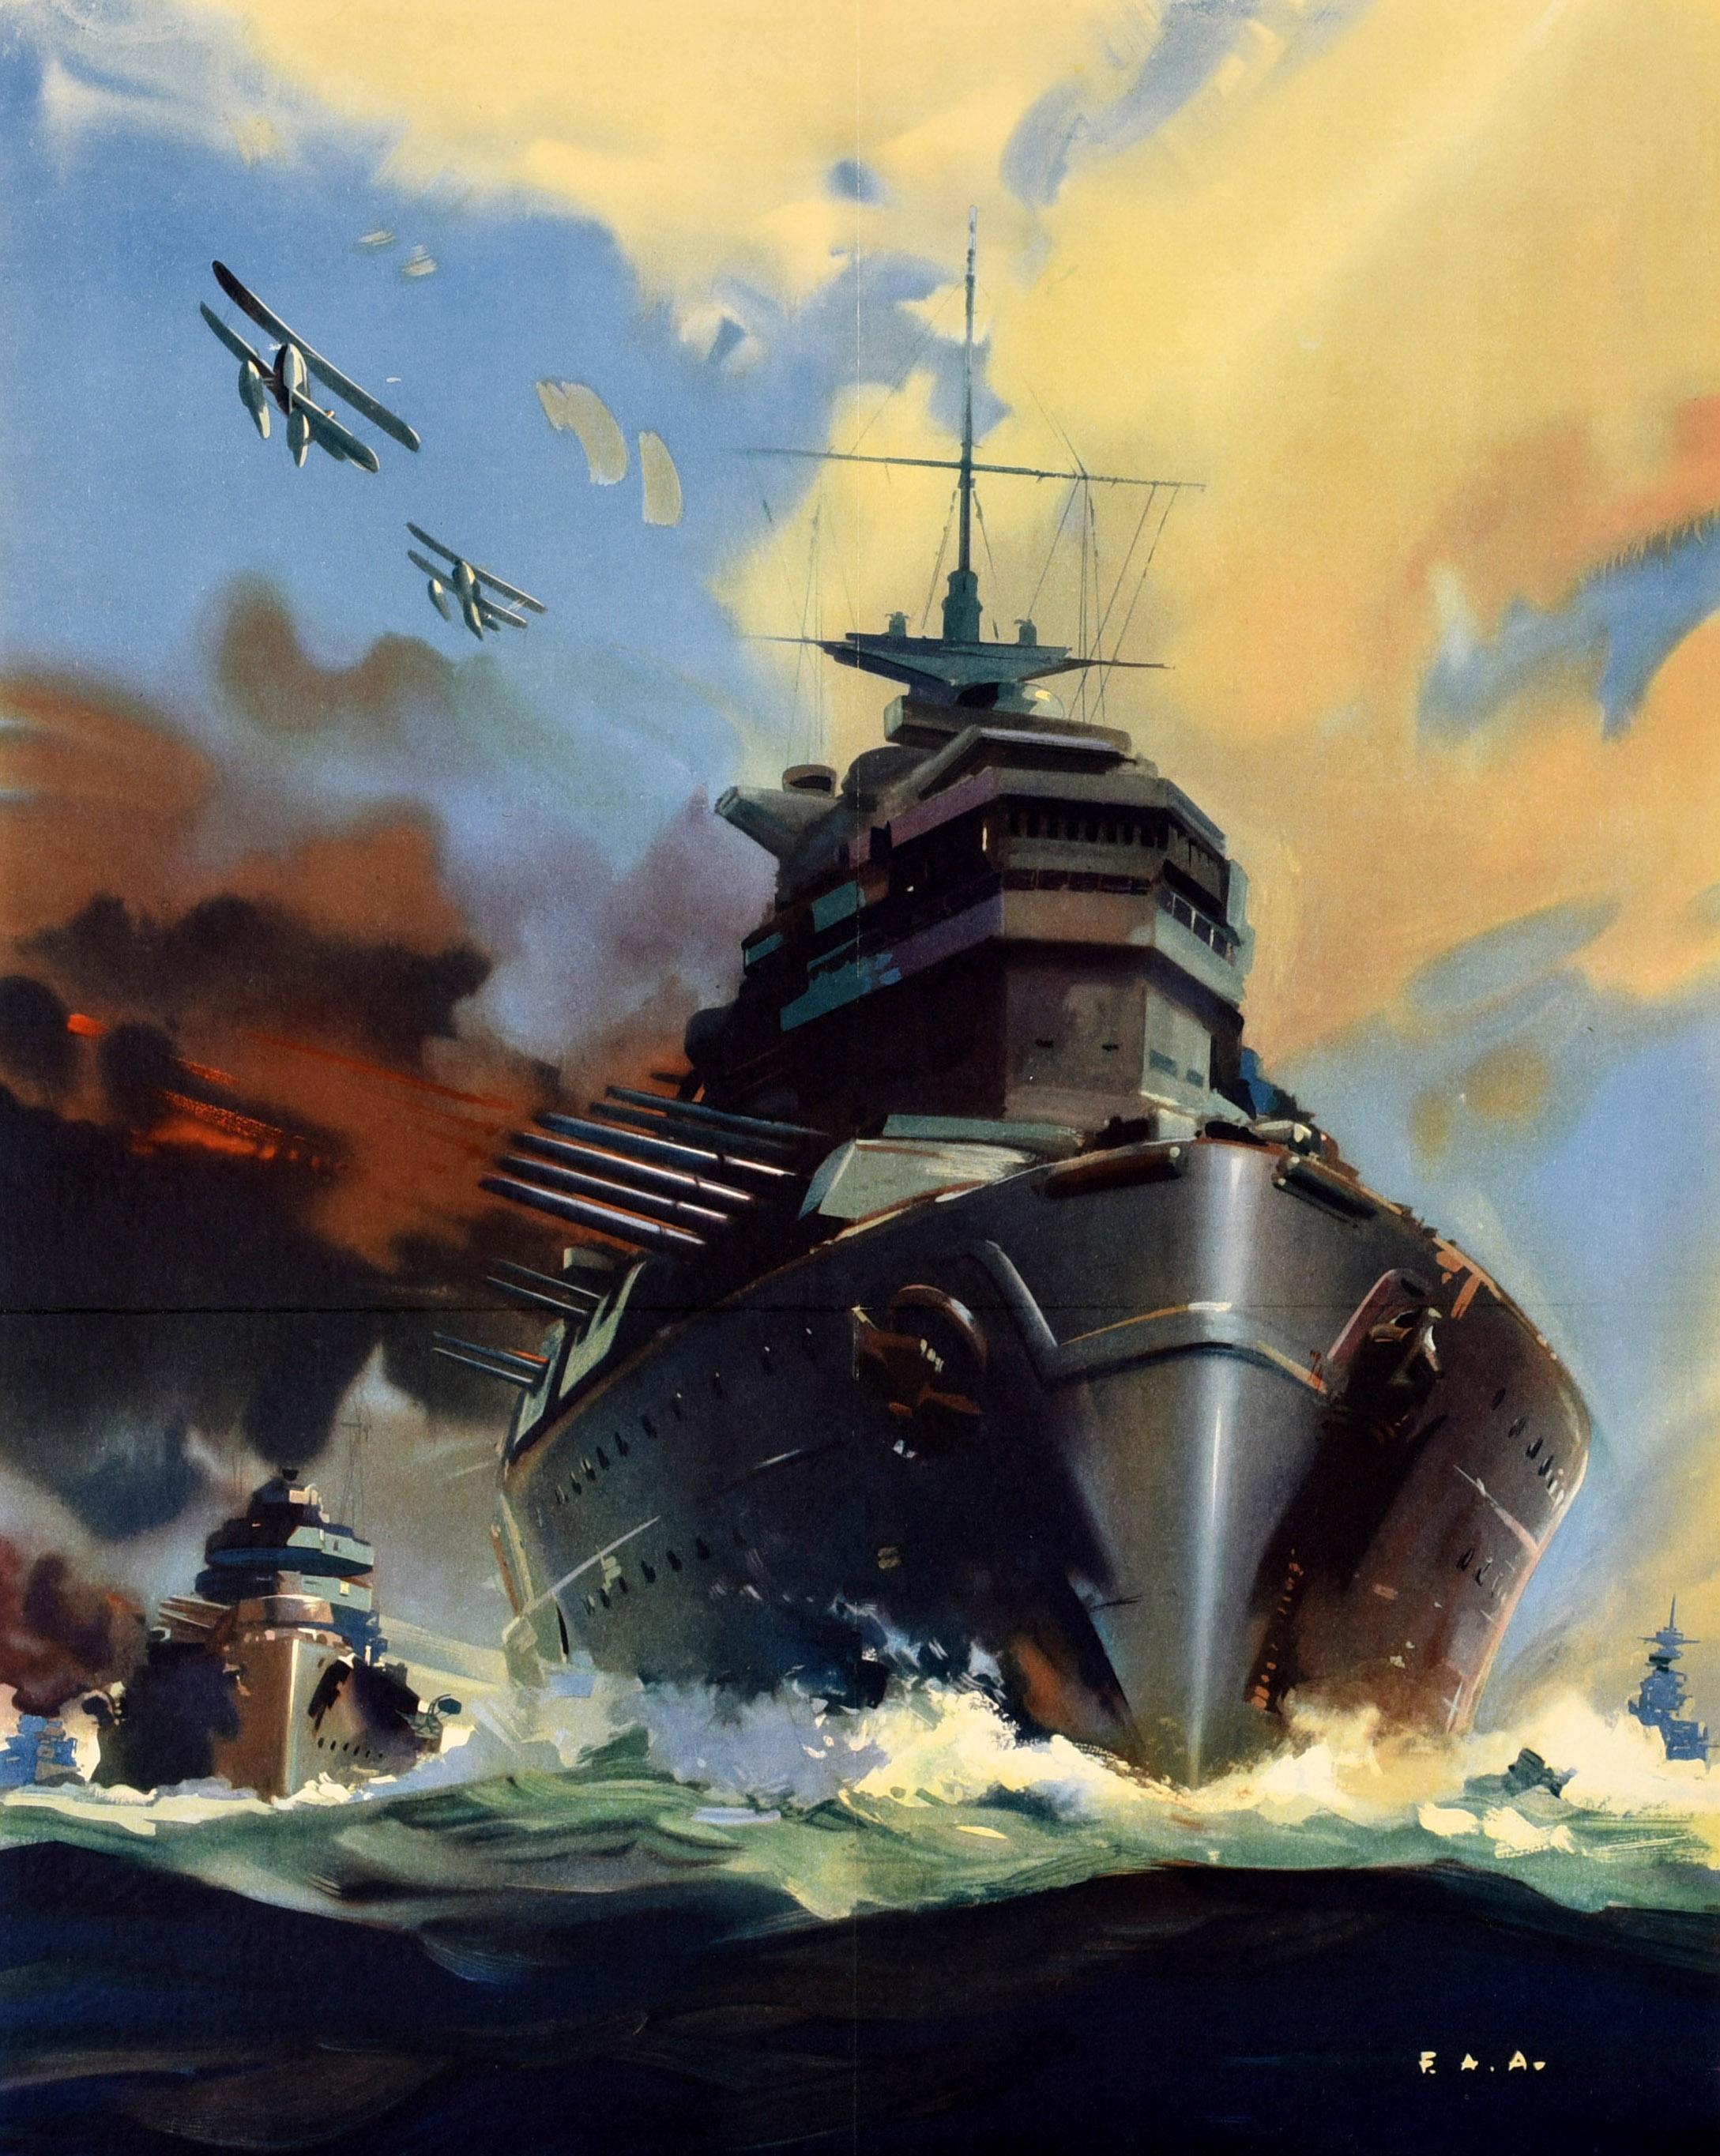 Affiche de propagande originale de la Seconde Guerre mondiale - Help Britain Finish the Job ! - représentant un navire de guerre en mer déferlant sur les vagues vers le spectateur et des canons fumant sur le côté, avec des biplans survolant les